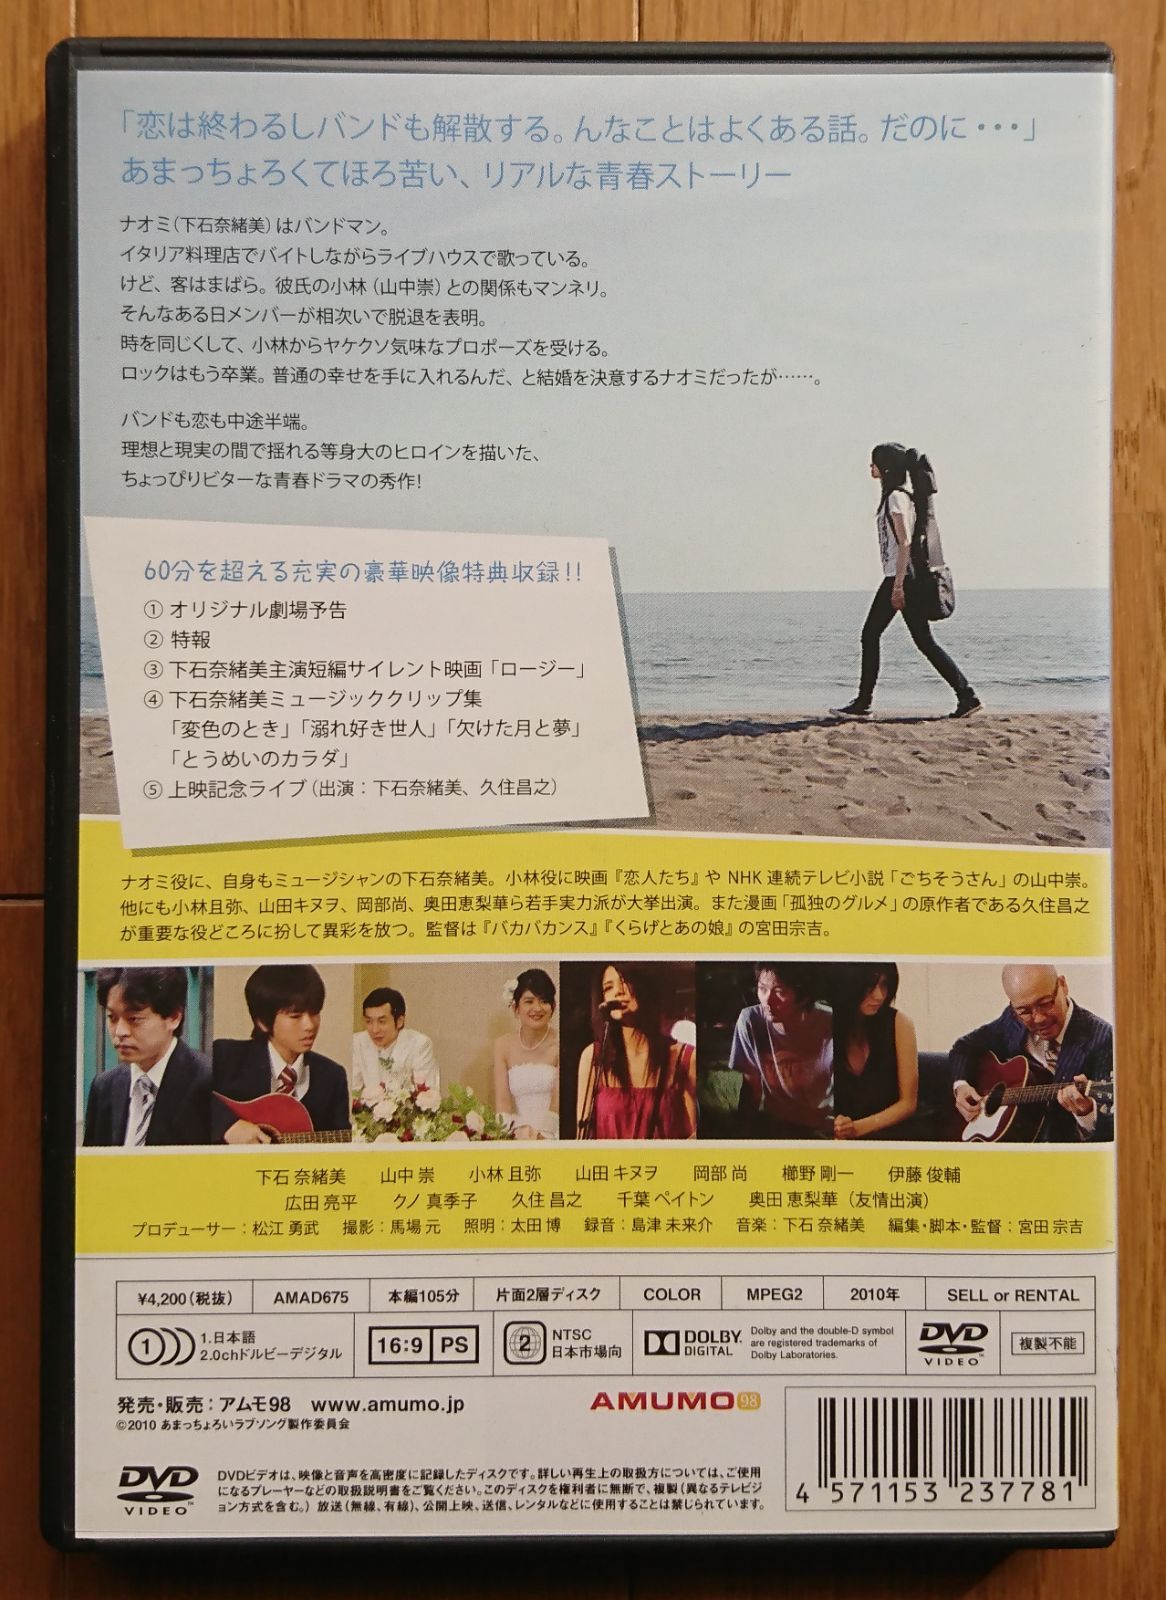 レンタル版DVD】あまっちょろいラブソング 出演:下石奈緒美 - メルカリ